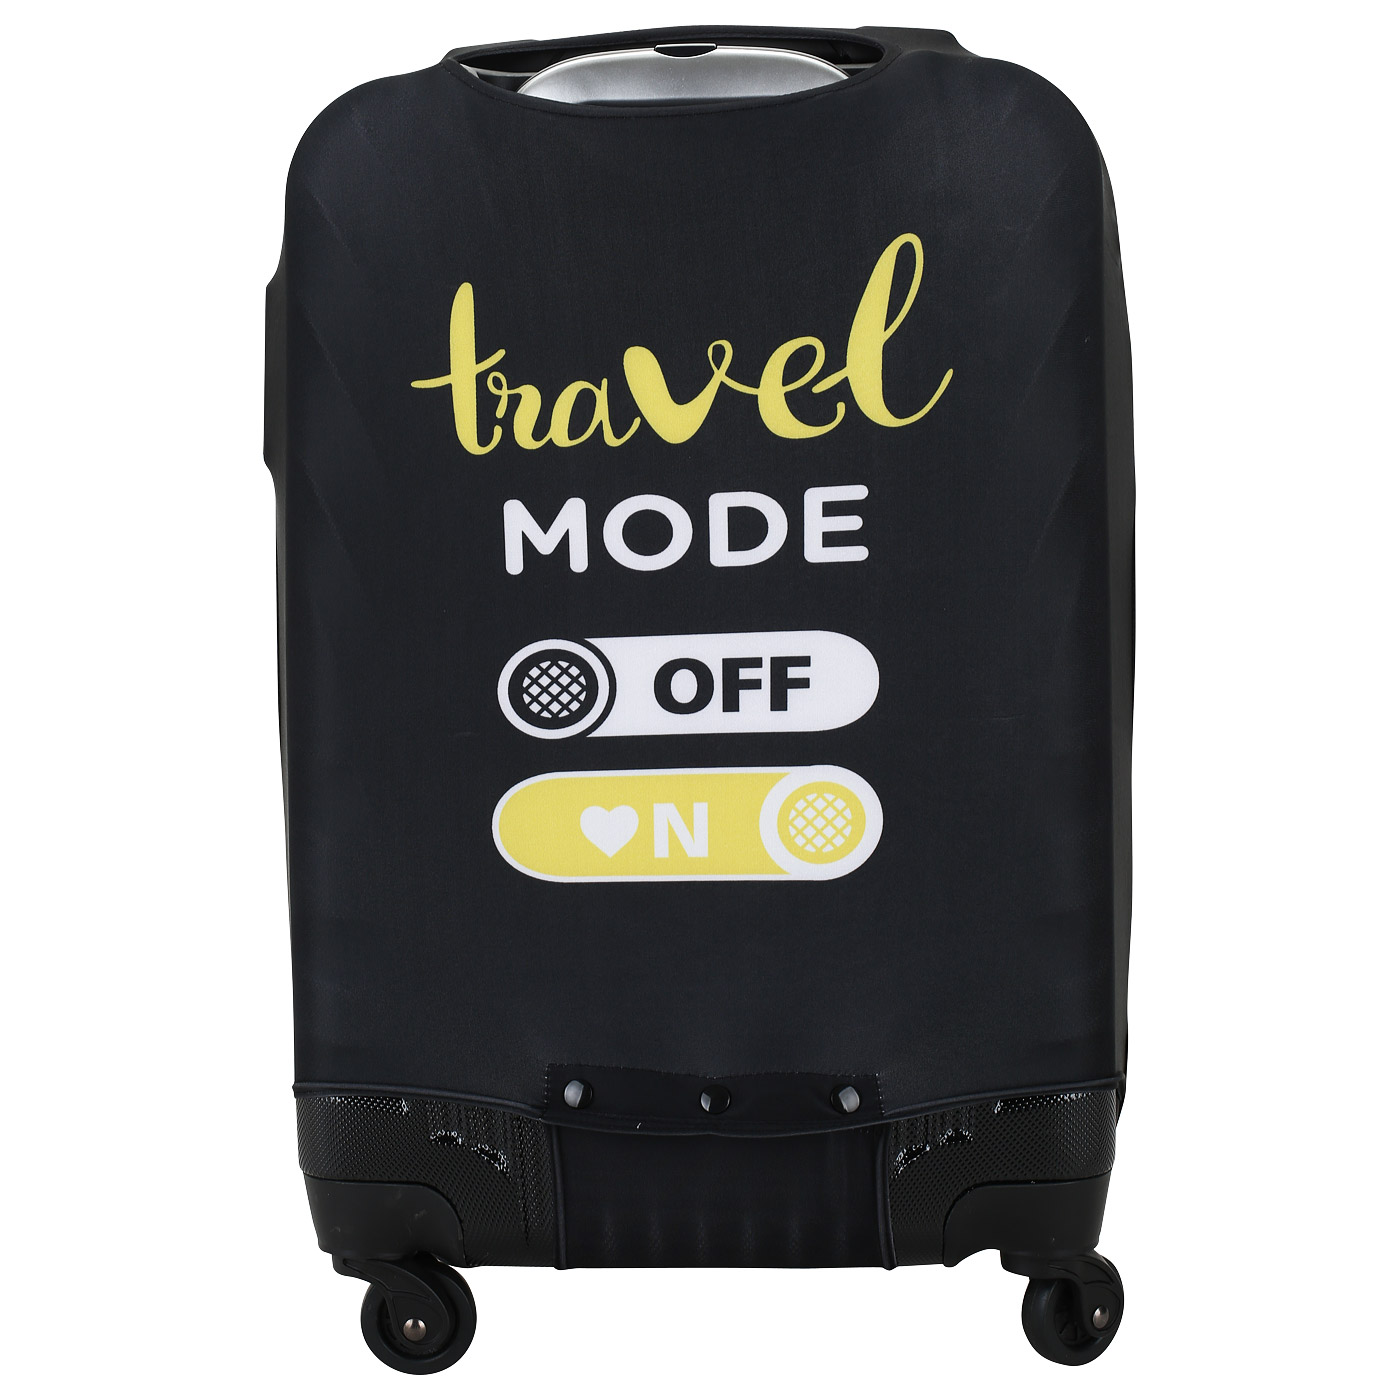 Черный чехол для крупного чемодана Eberhart Travel Mode On Off